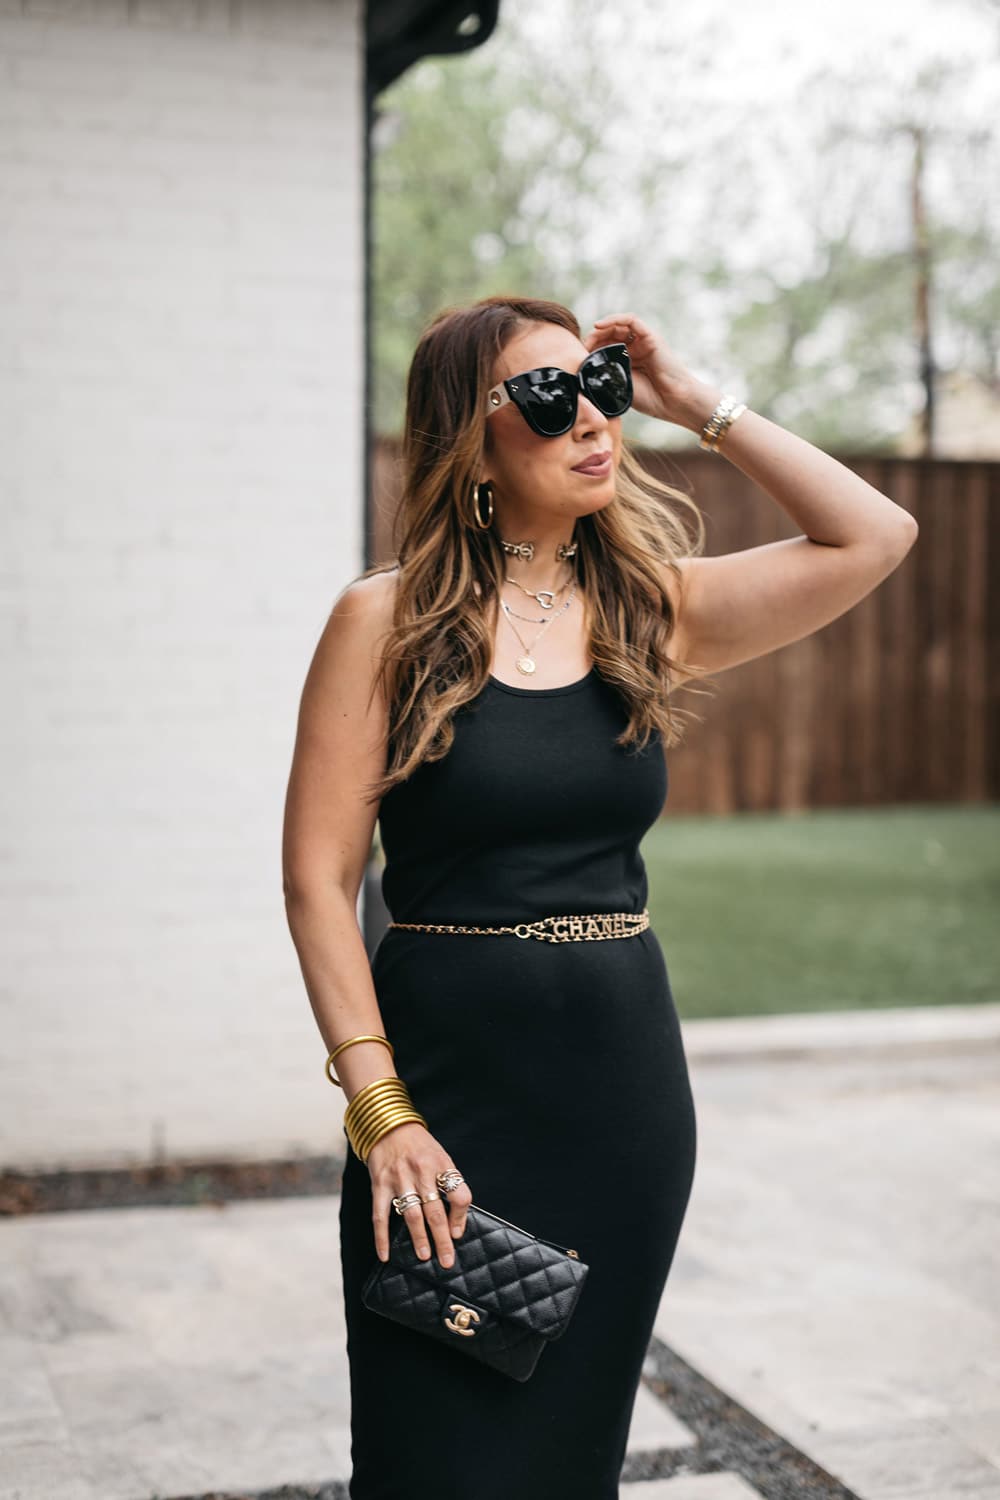 Woman wearing stylish black dress and stylish accessories